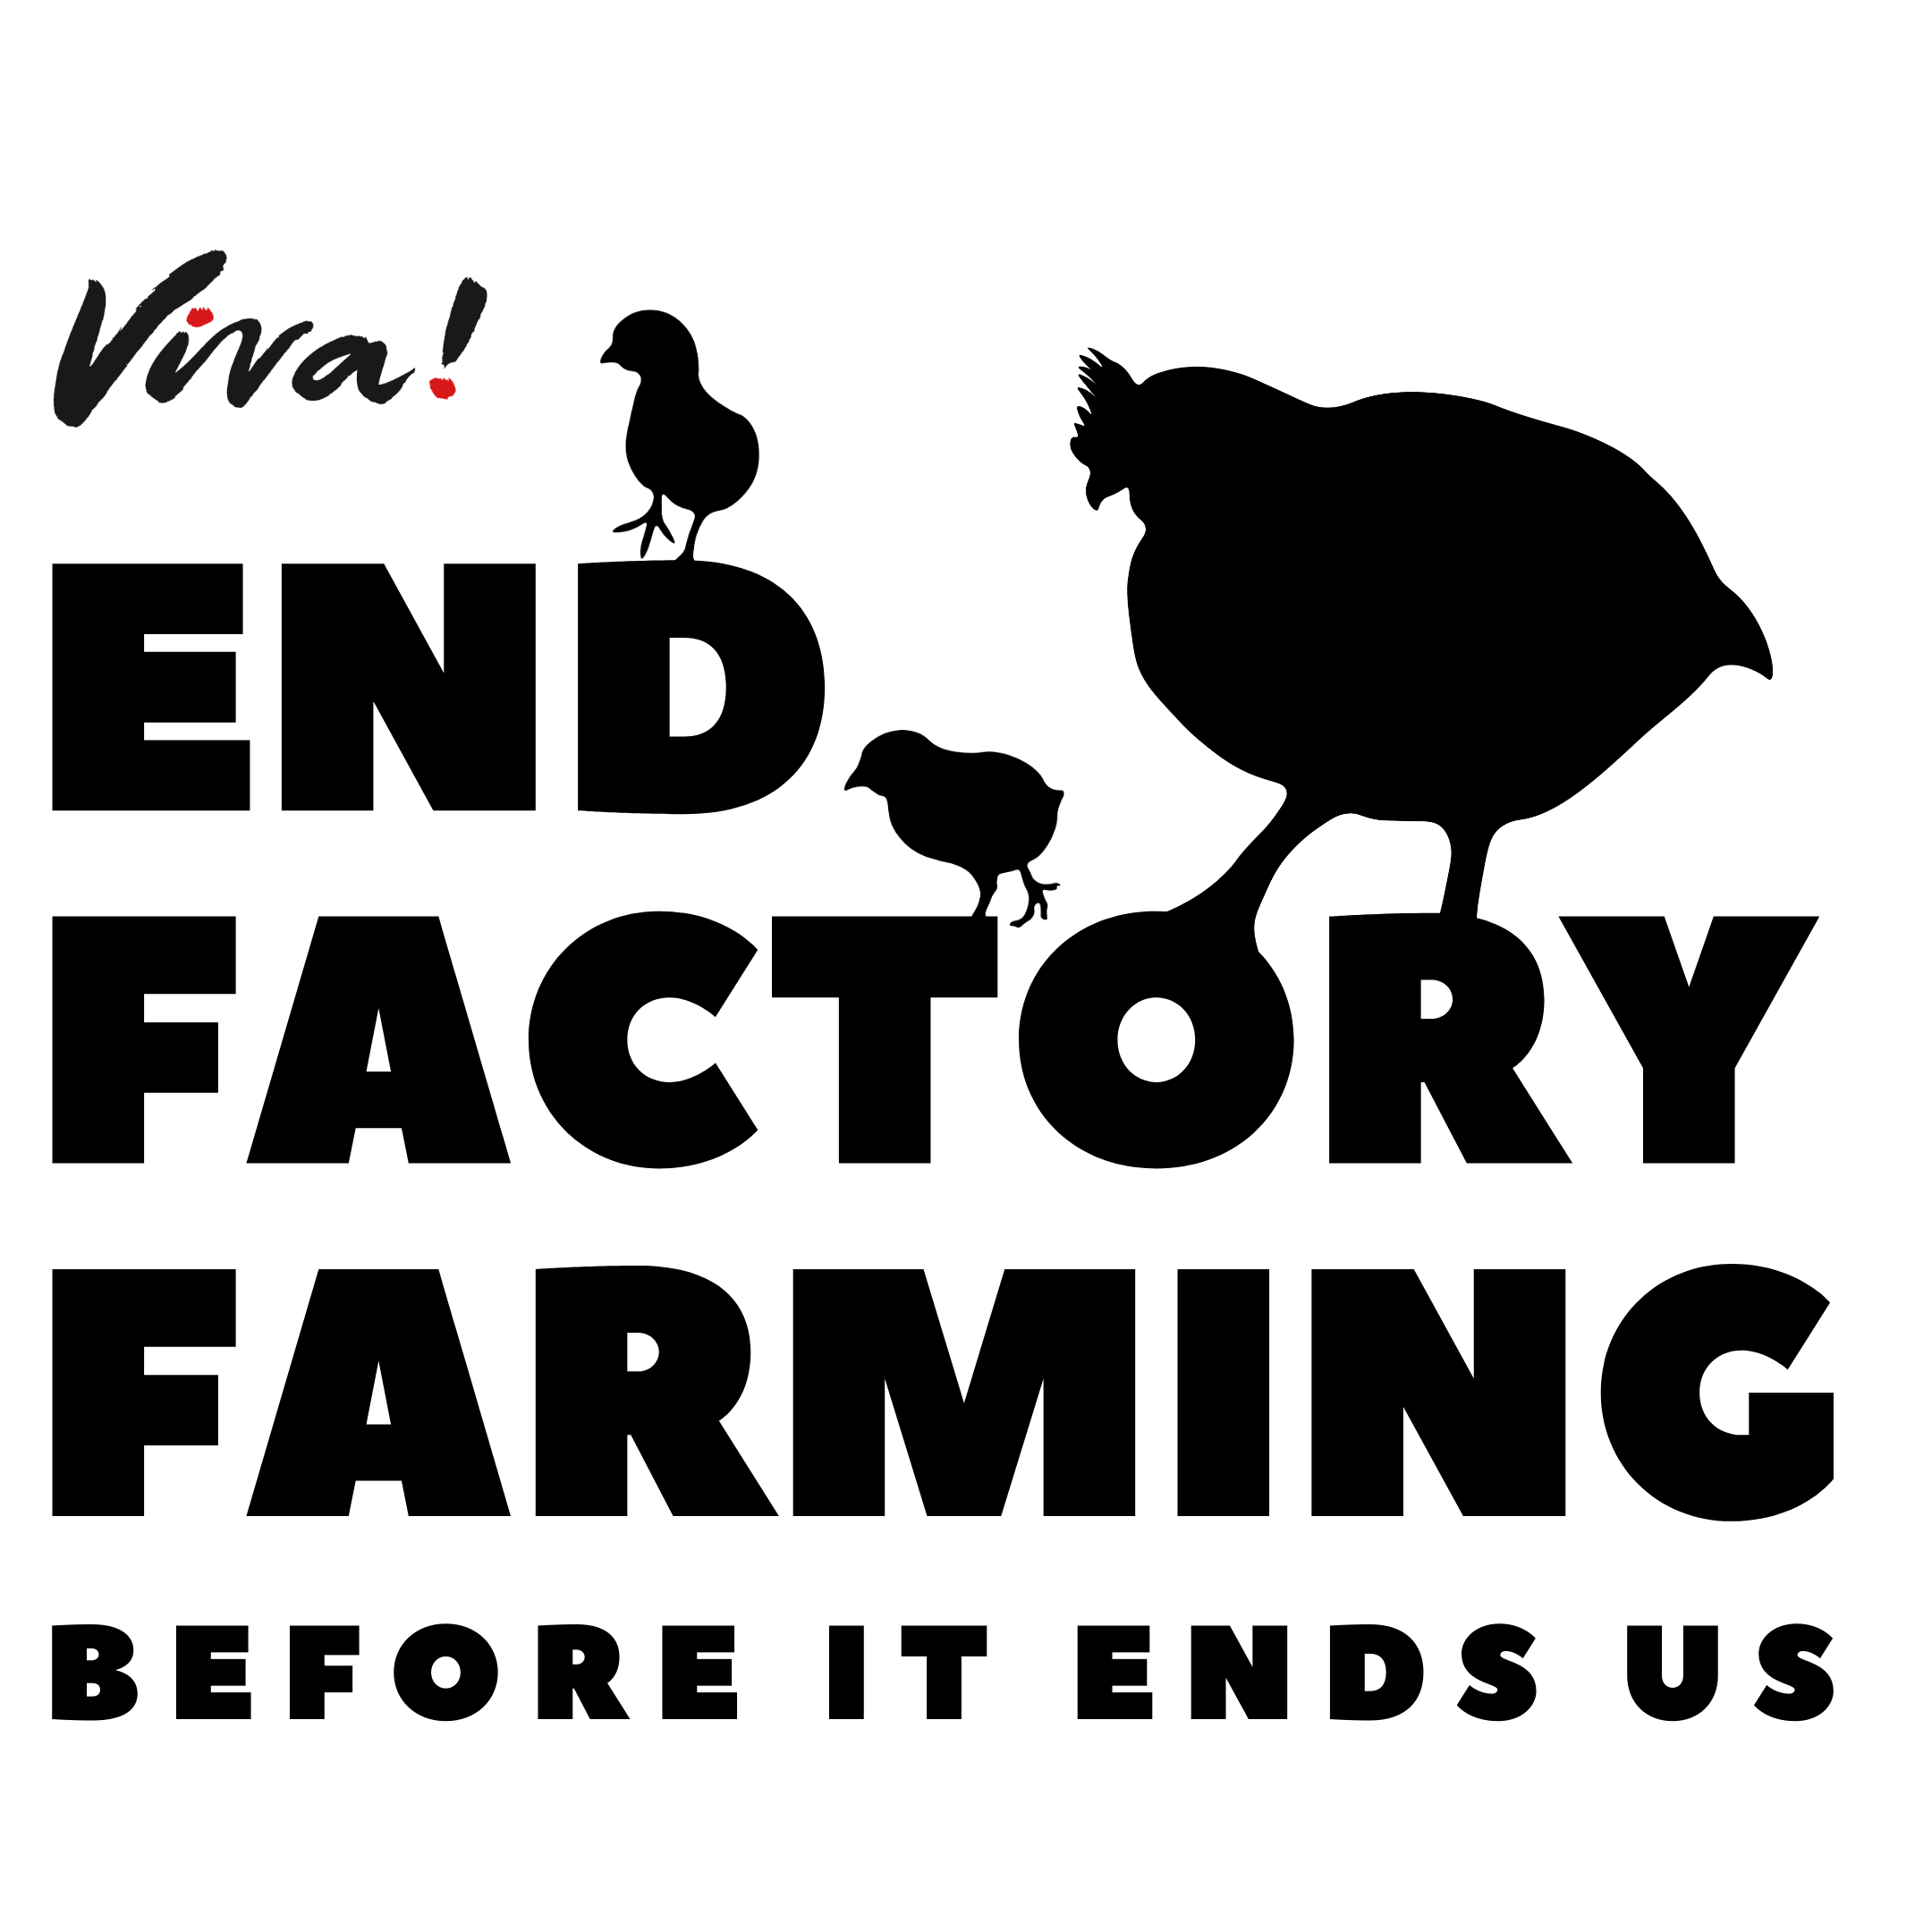 End factory farming broiler logo